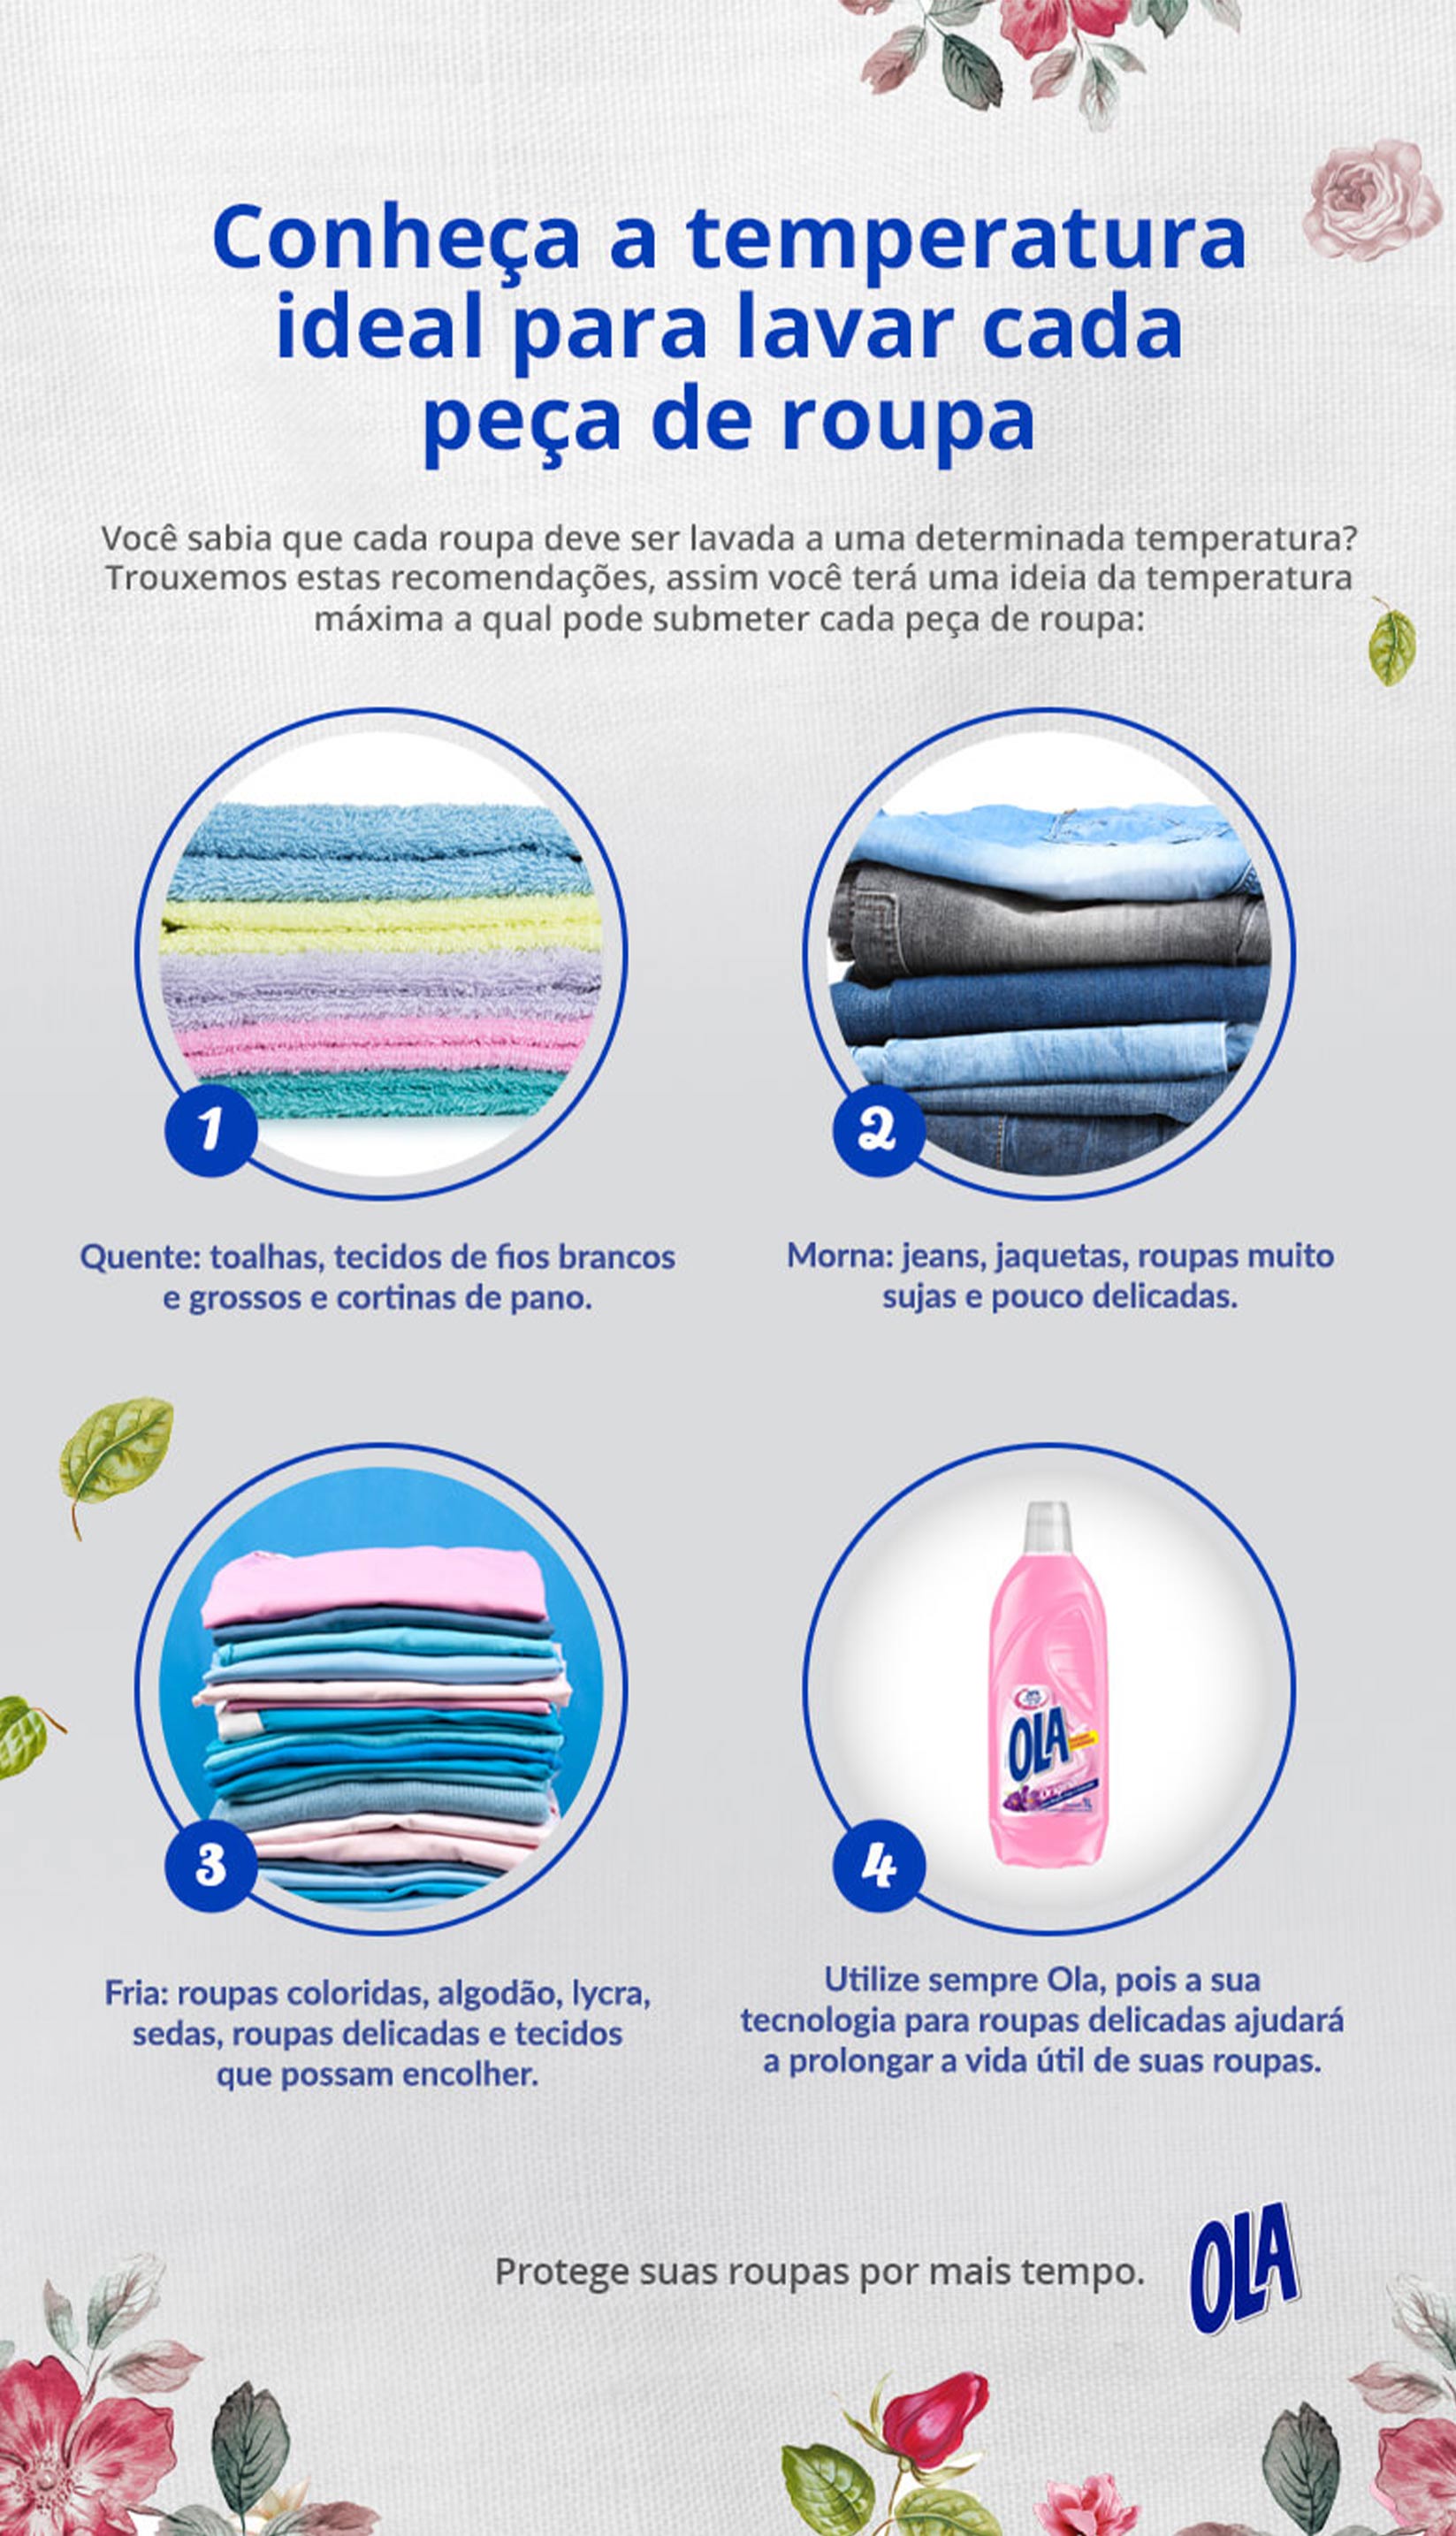 Comment laver du linge de couleur : le guide le plus complet